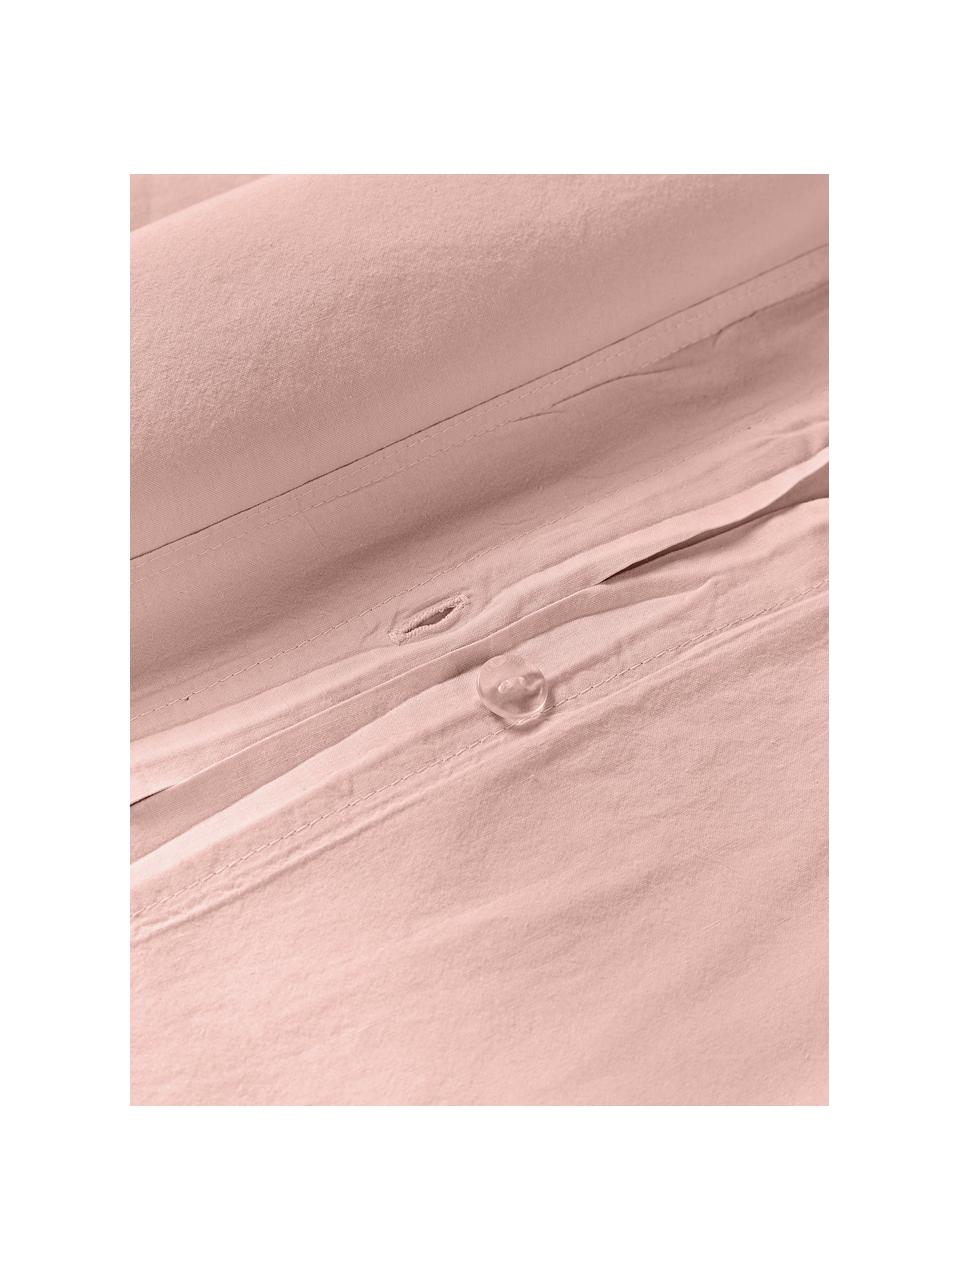 Funda nórdica de algodón lavado Darlyn, 100% algodón
Densidad de hilo 150 TC, calidad estándar

El algodón da una sensación agradable y suave en la piel, absorbe bien la humedad y es adecuado para personas alérgicas.

Este tejido ha sido sometido a un proceso de lavado especial que le da un aspecto Softwash irregular y resistente, pero siendo suave al tacto, flexible y cómodo. Además, su aspecto arrugado natural hace que no necesite planchado.

El material utilizado para este producto ha sido probado contra sustancias nocivas y está certificado según el STANDARD 100 por OEKO-TEX®, 4265CIT, CITEVE, Melocotón, Cama 90 cm (155 x 220 cm)